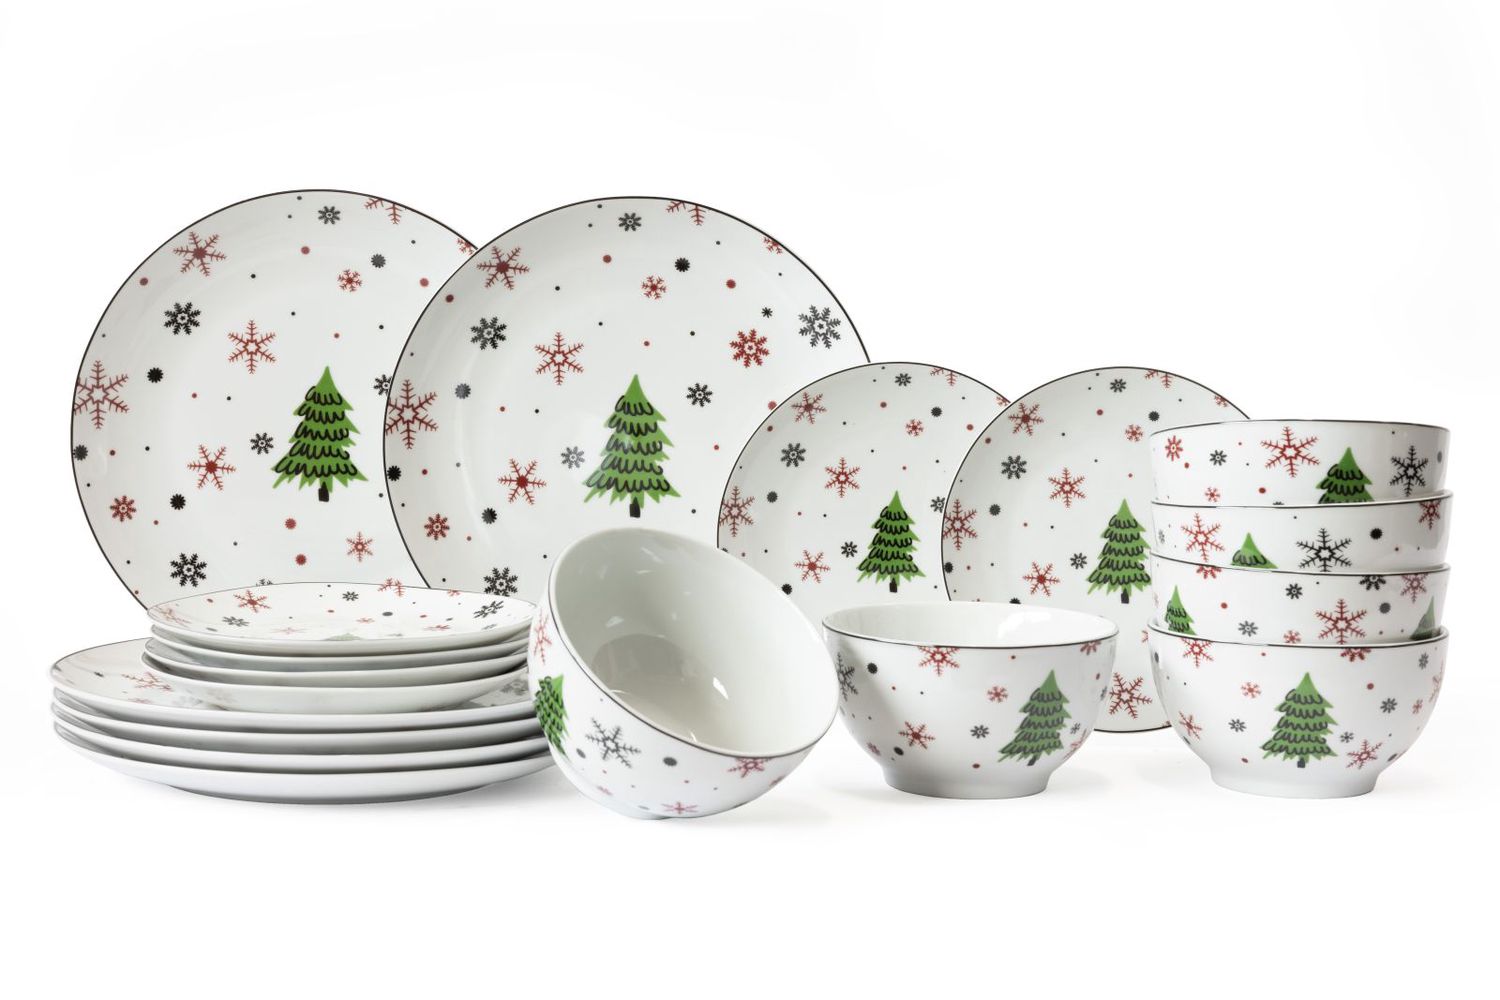 Assiette de service de Noël en porcelaine avec décorations colorées